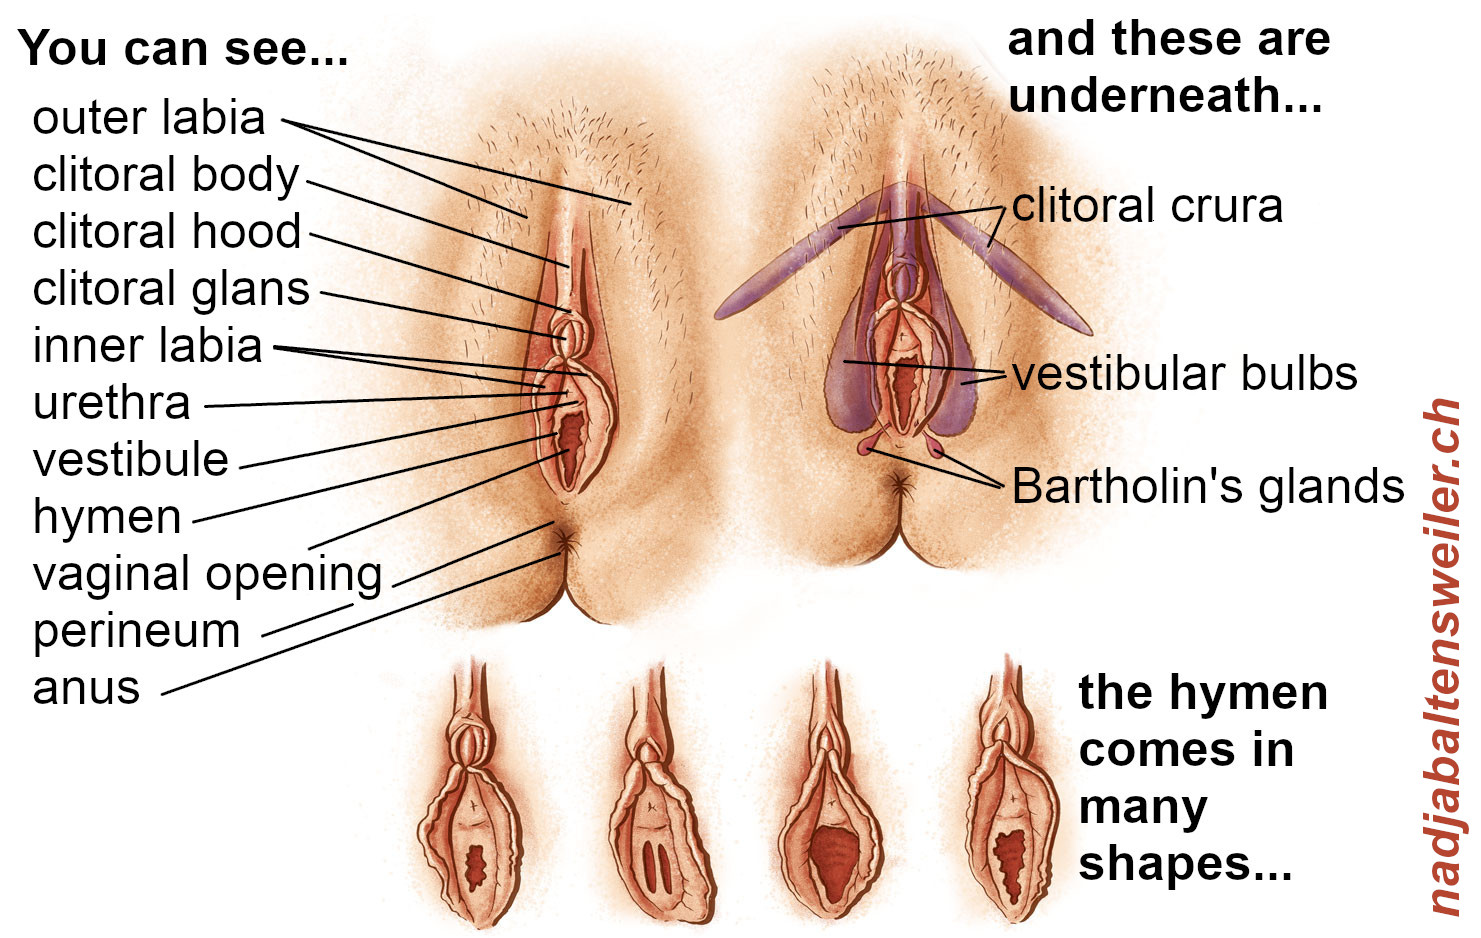 Orgasm clitoral or vaginal?